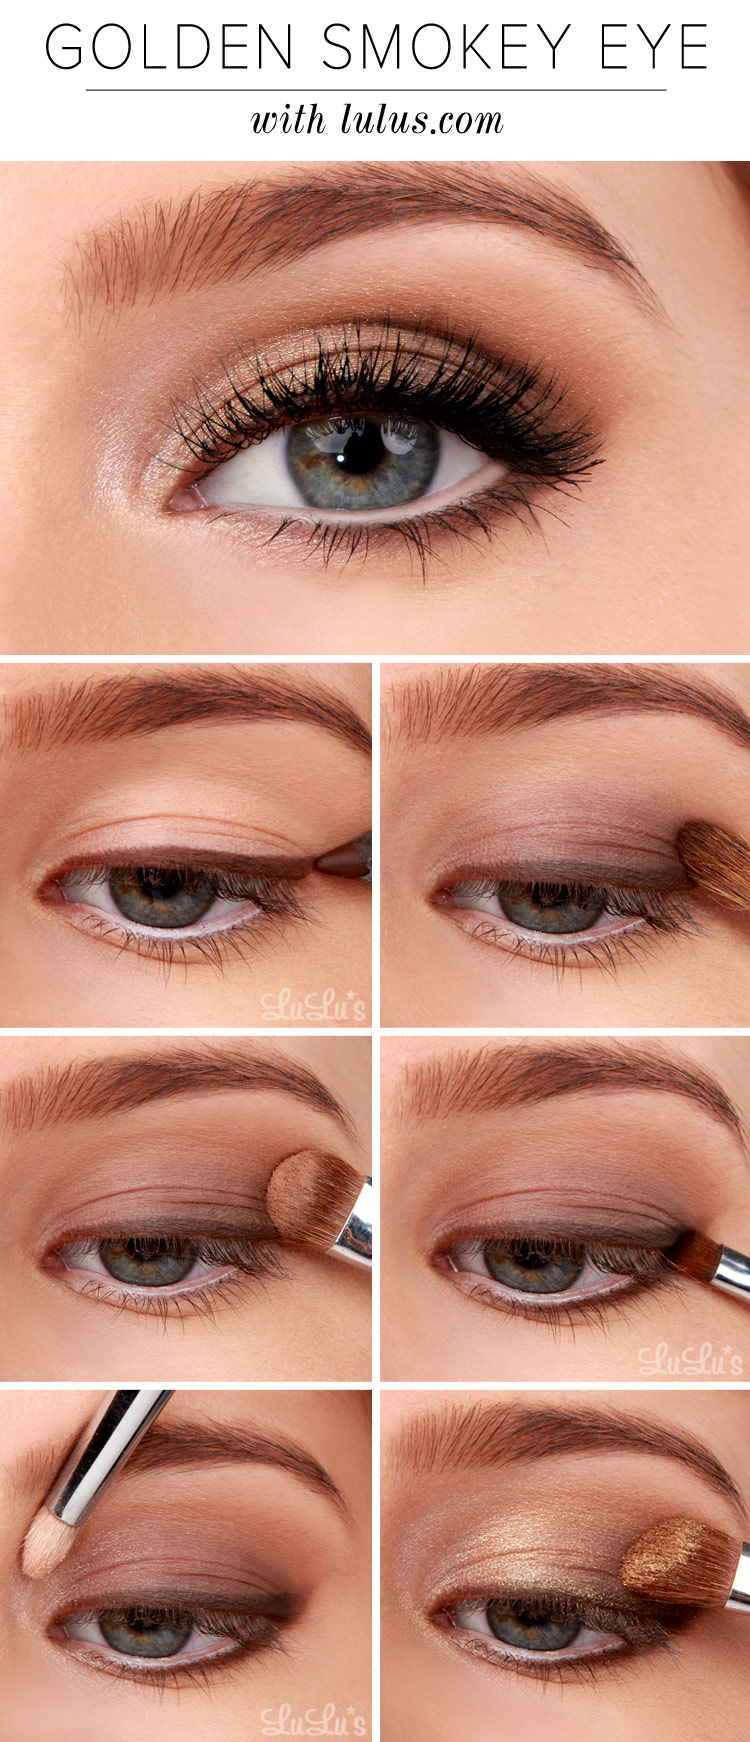 Golden smokey eye tutorial